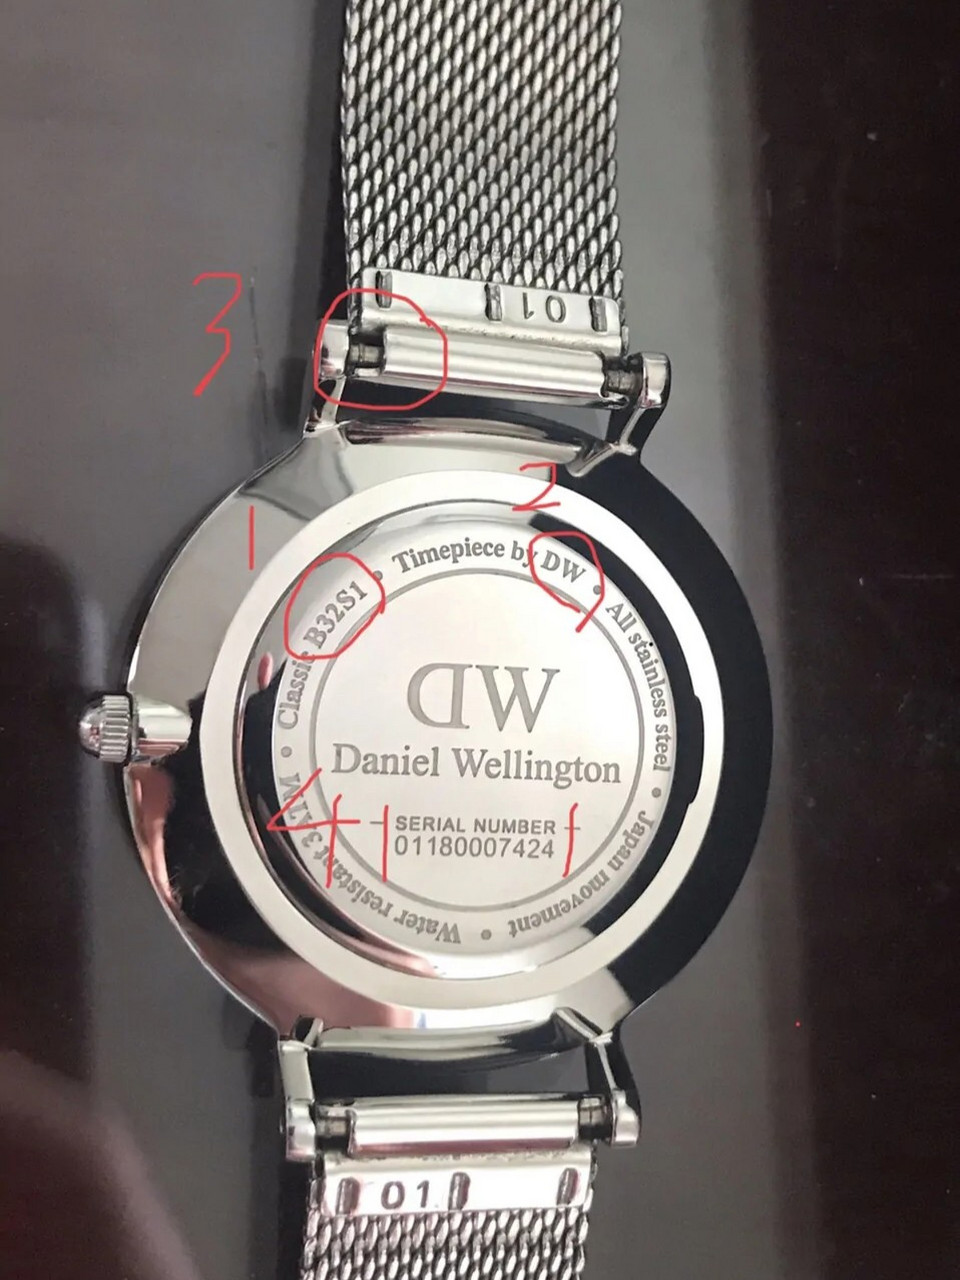 dw手表价格及图片 反面图片